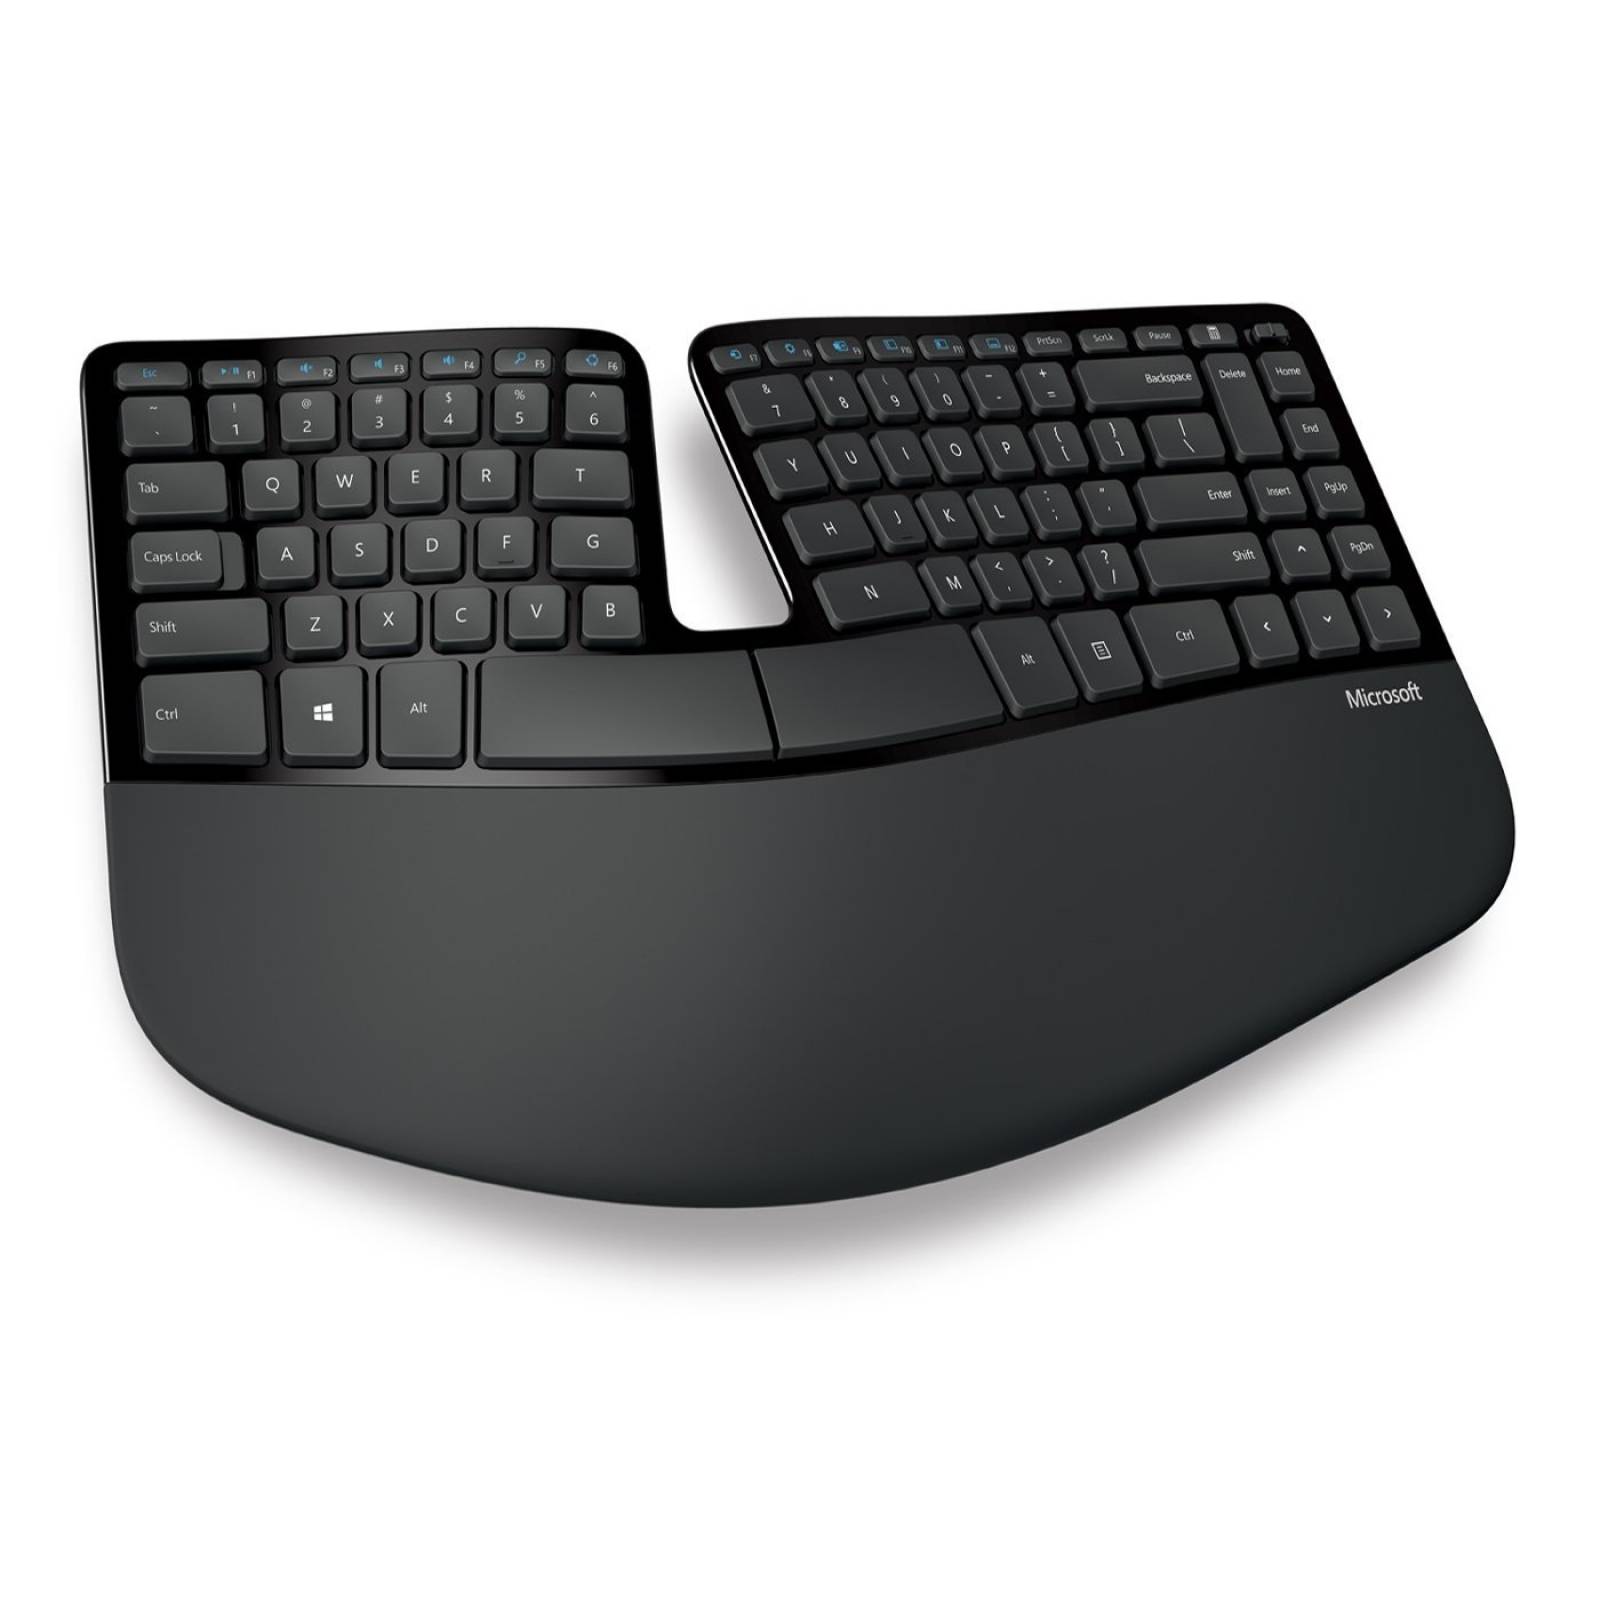 B:Microsoft esculpir teclado ergonómico negocio (5KV-00001)